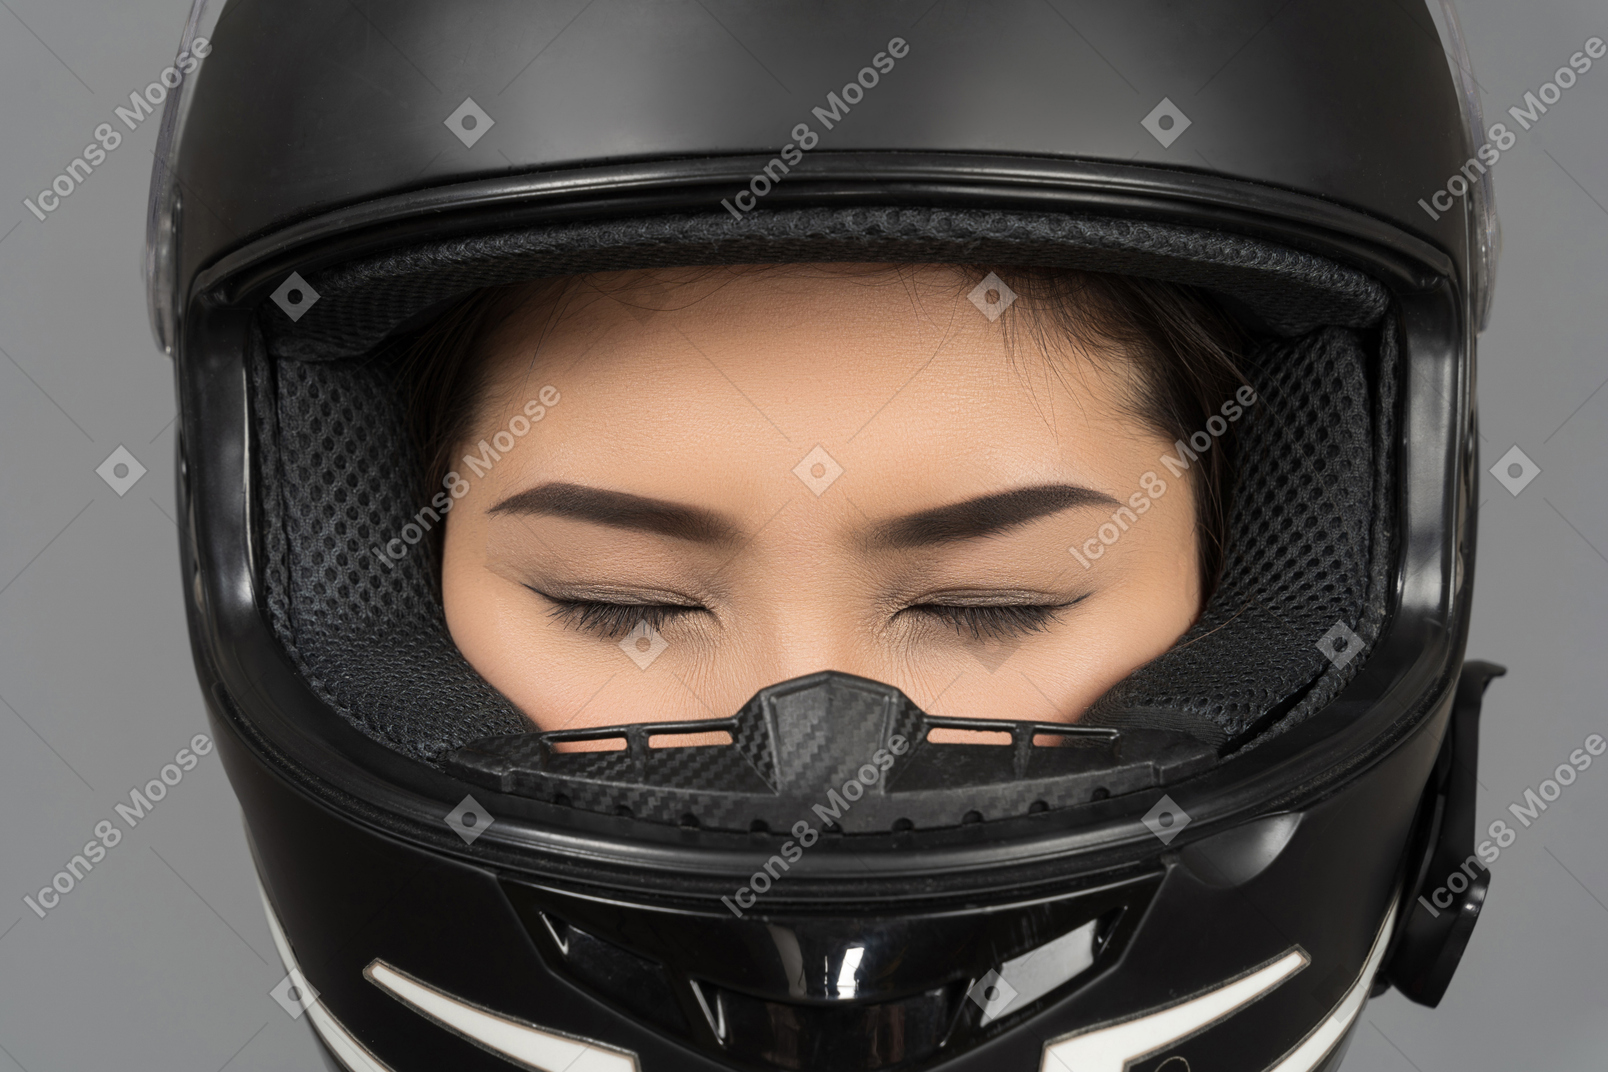 검은 색 헬멧을 쓰고 닫힌 눈을 가진 여자